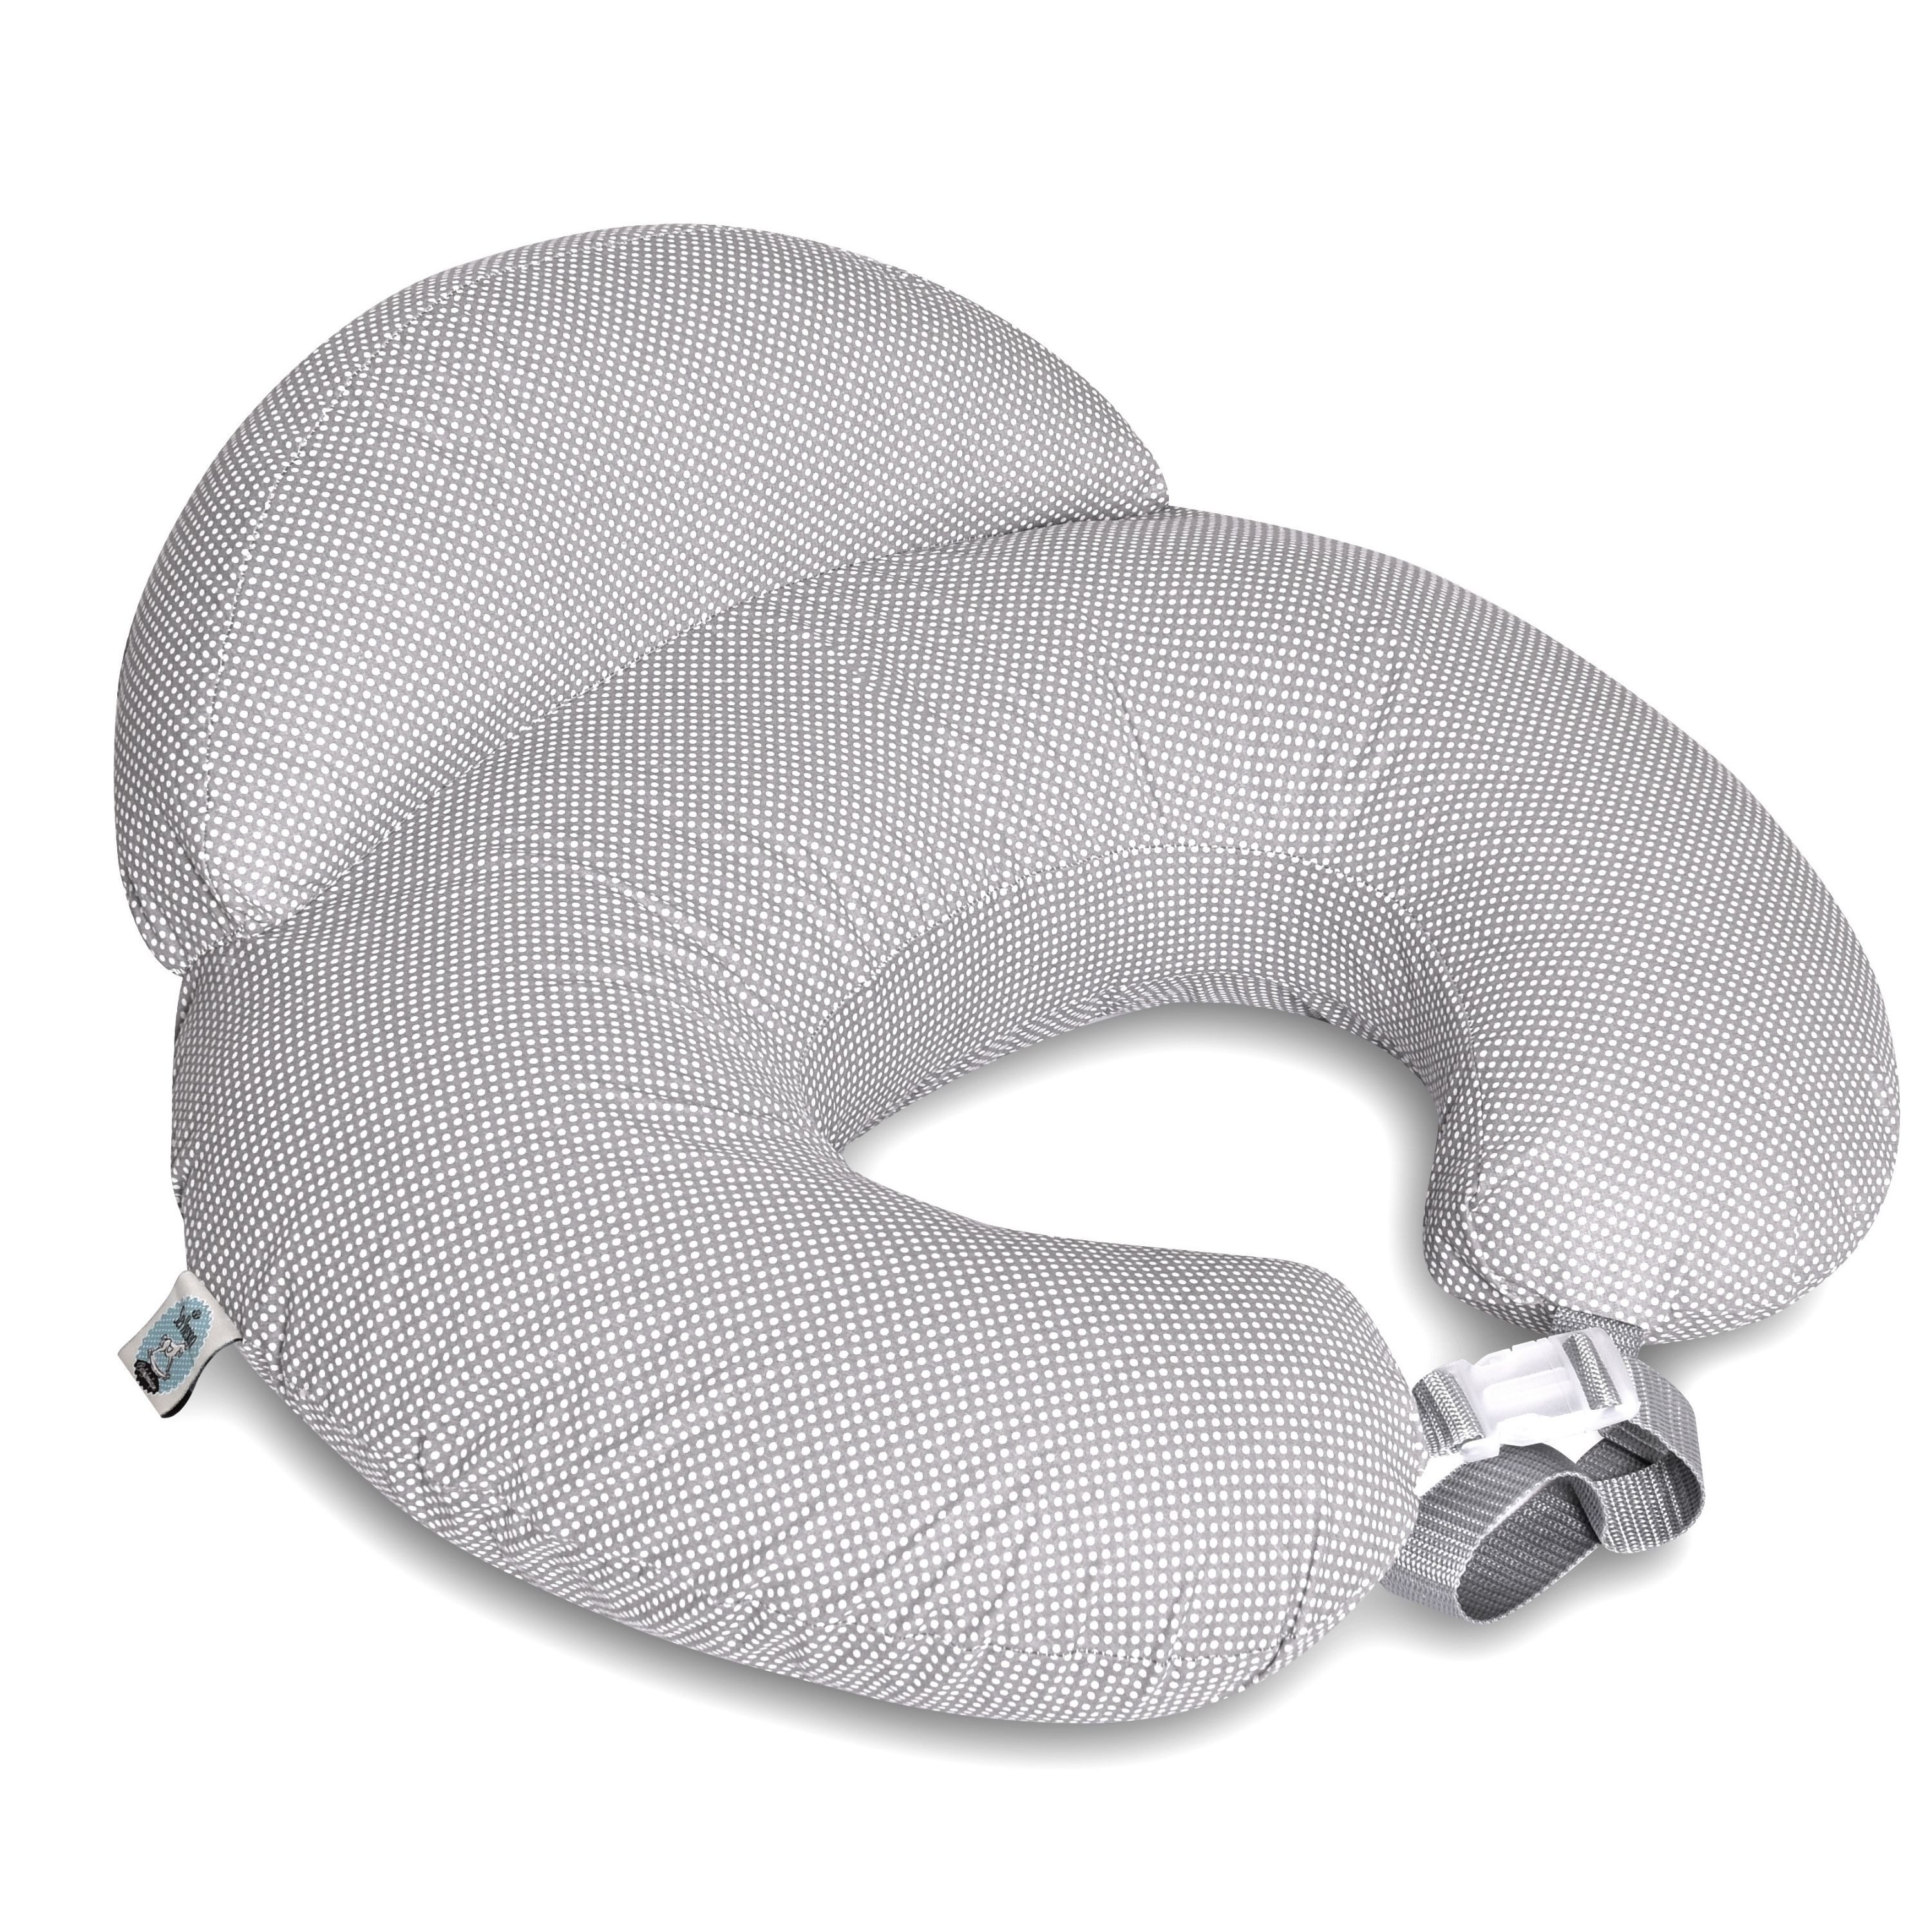 SEI Design Stillkissen Stillkissen mit verstellbarem Hüftgurt, entlastet Schultern und Nacken, zusätzliches Kissen als Barriere